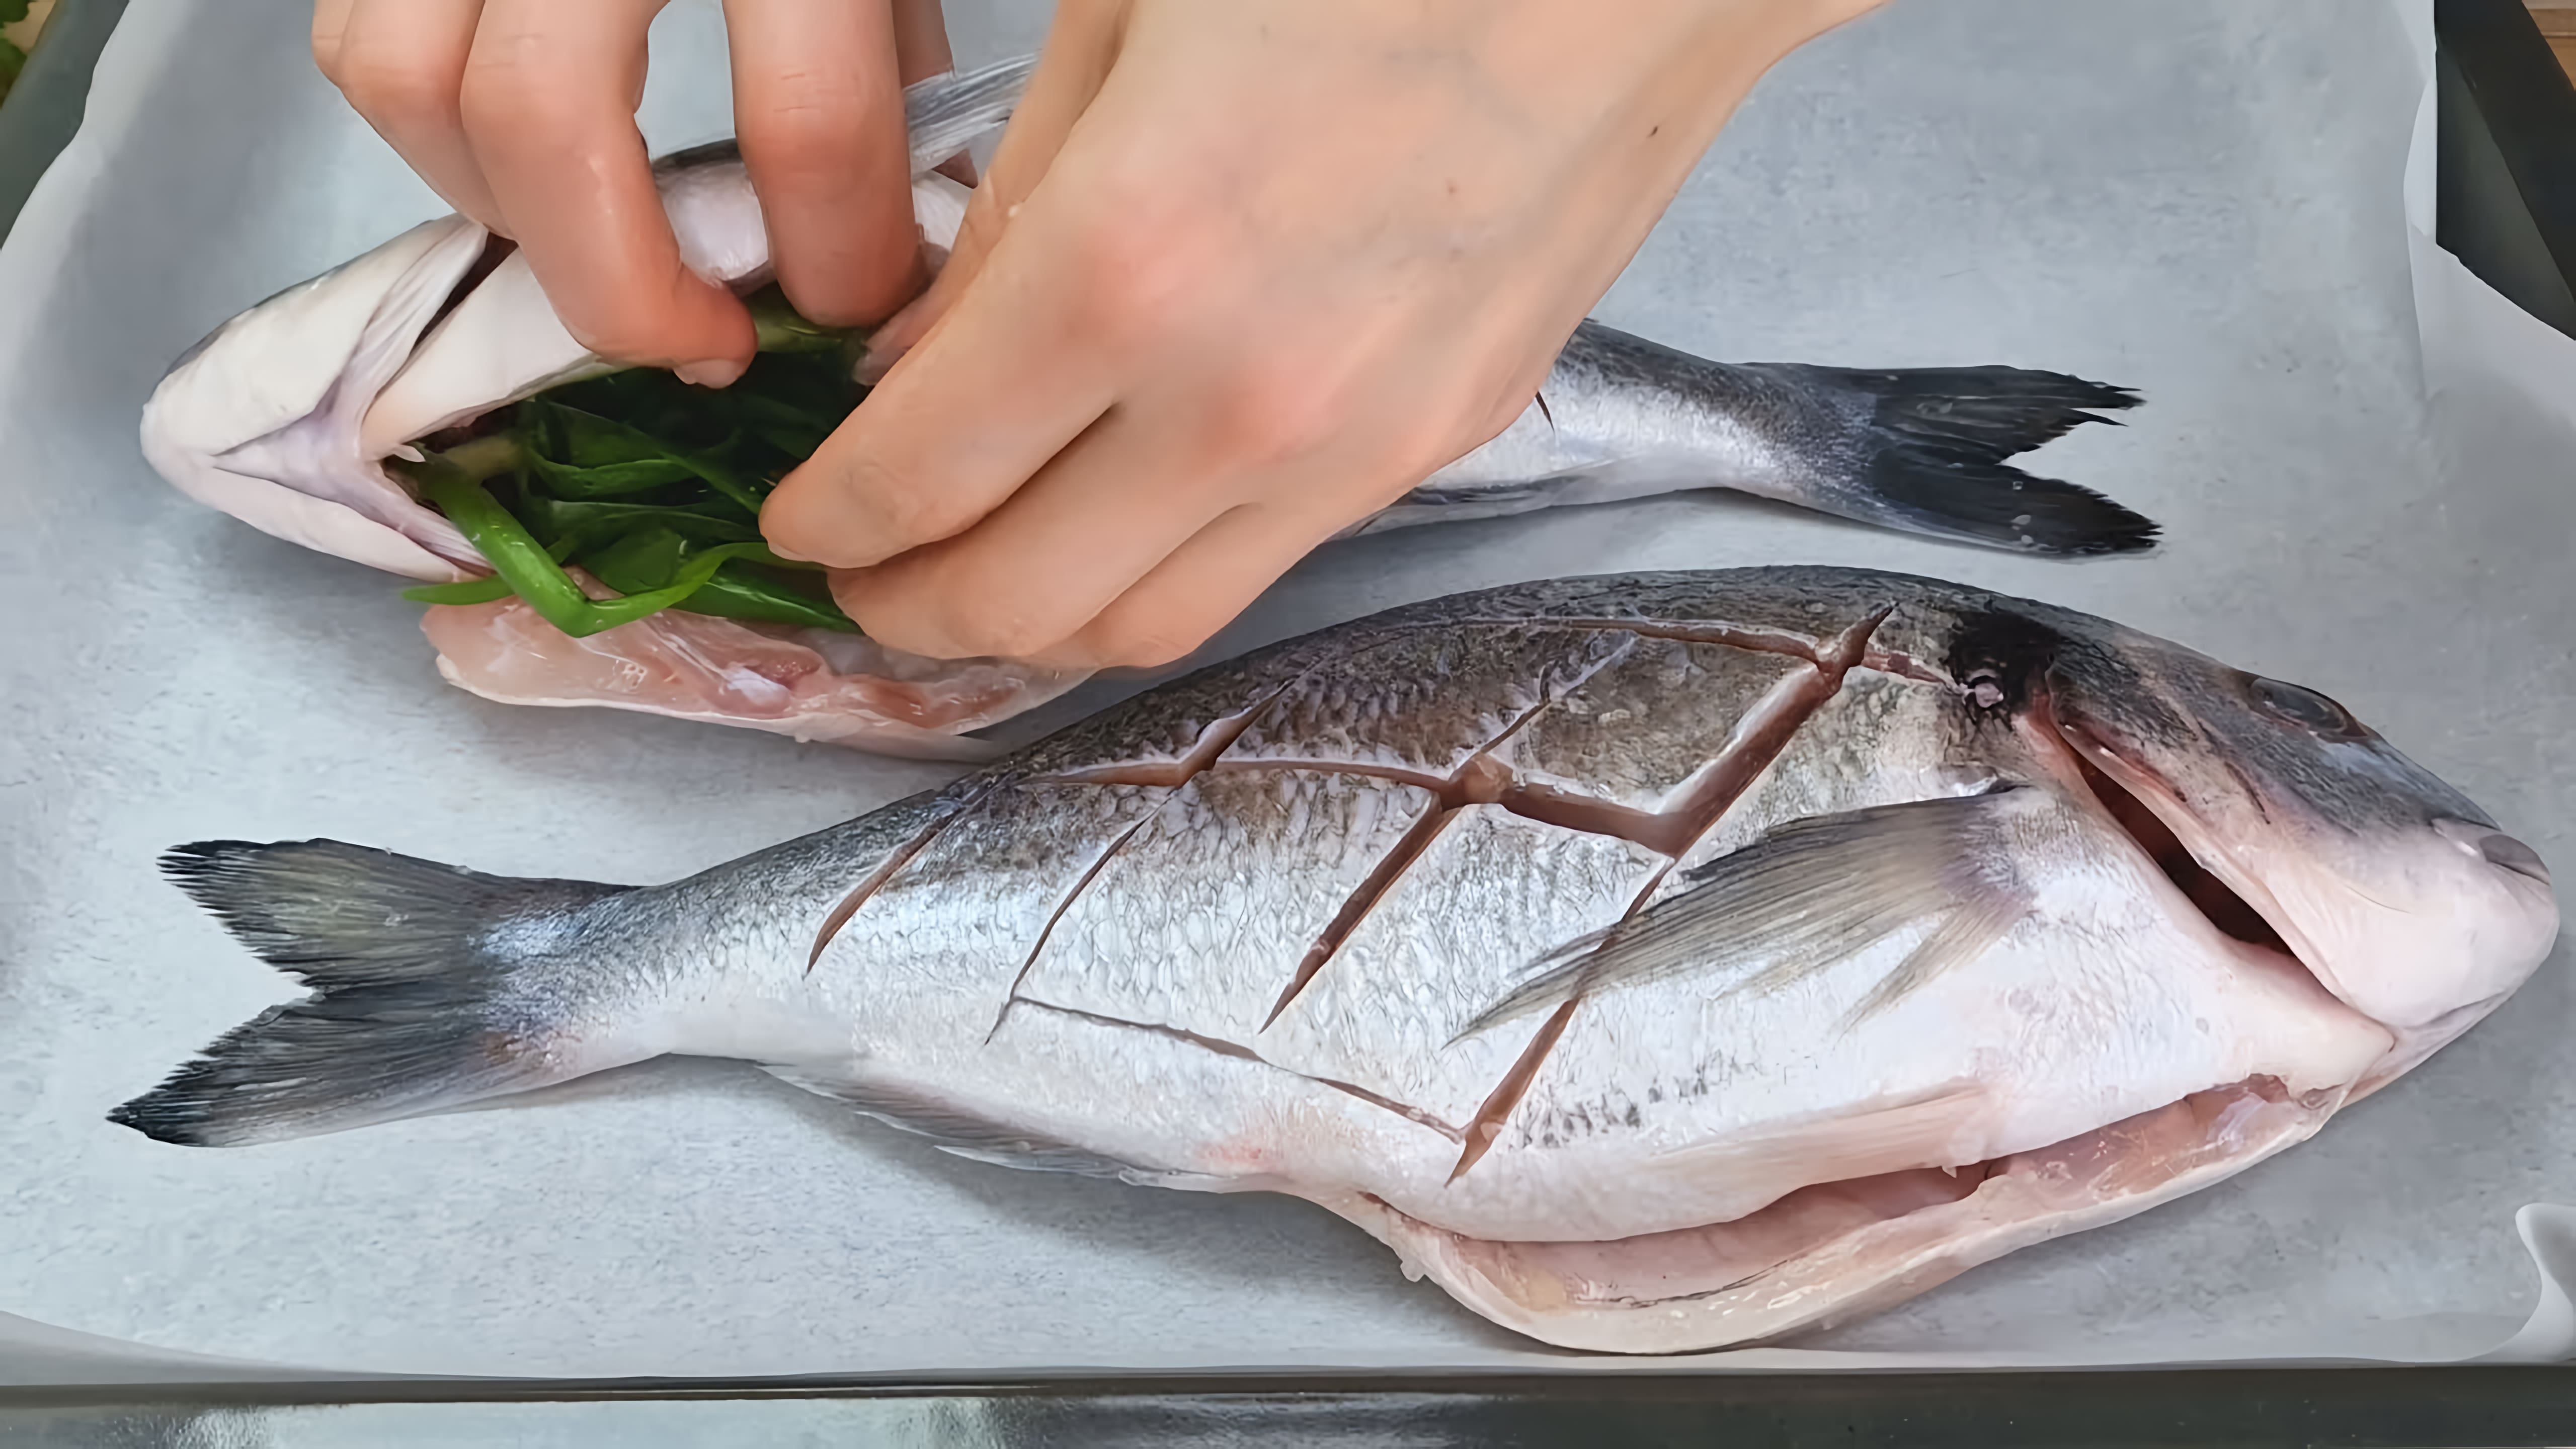 Видео: Жареная рыба уже в прошлом! Как нашла этот рецепт, стала готовить только так, на праздничный стол